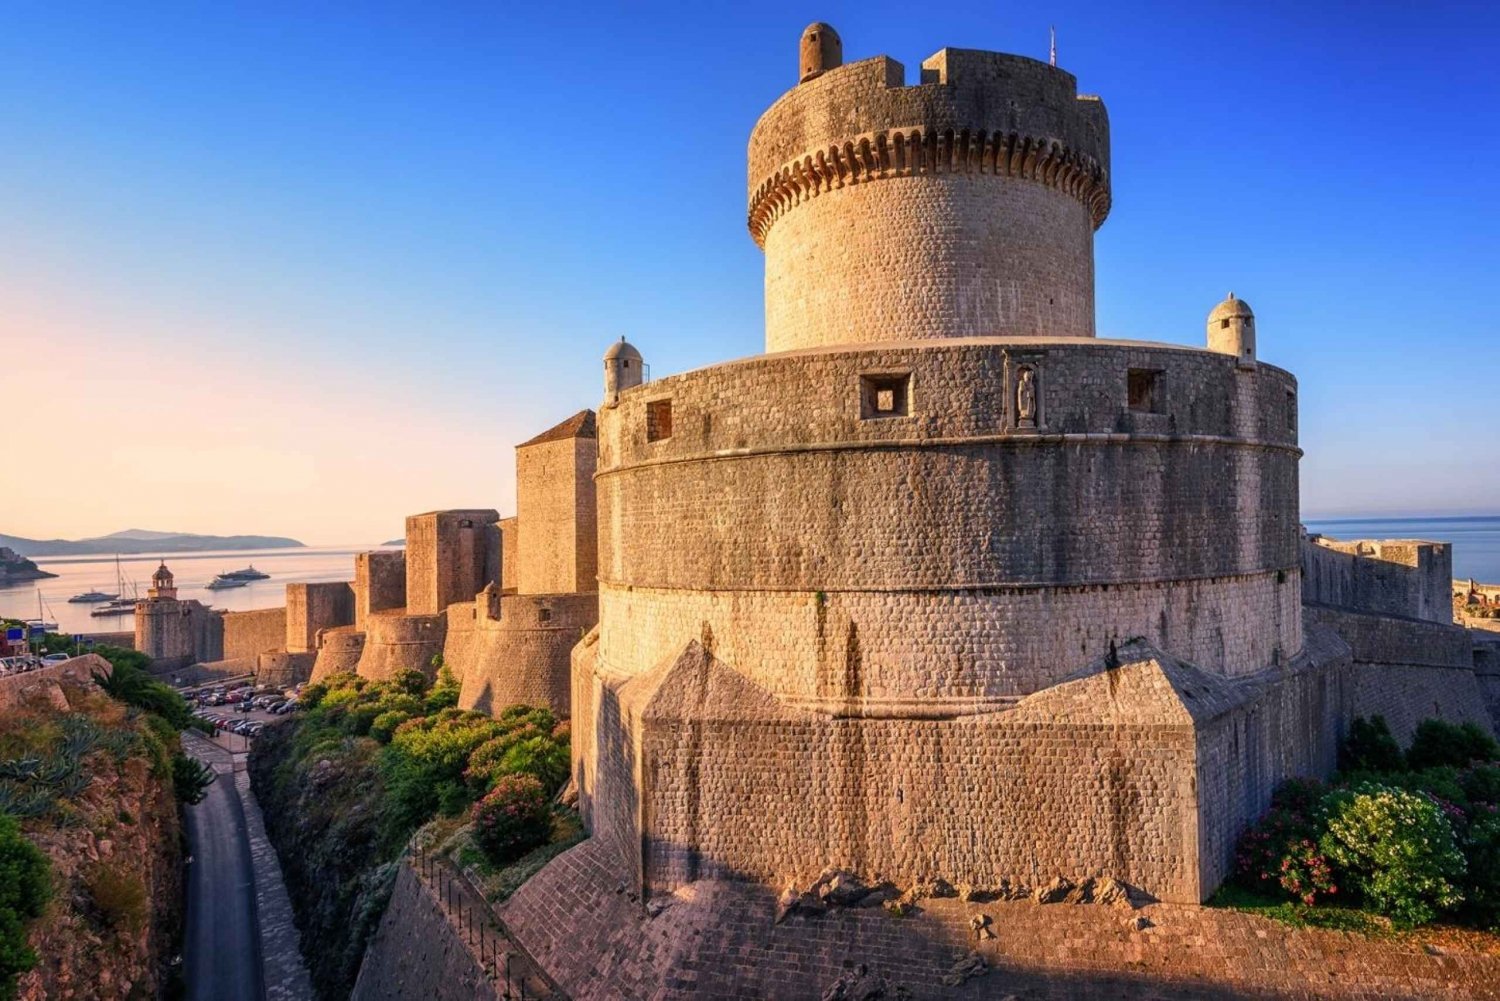 Excursão a pé pelas muralhas da cidade de Dubrovnik